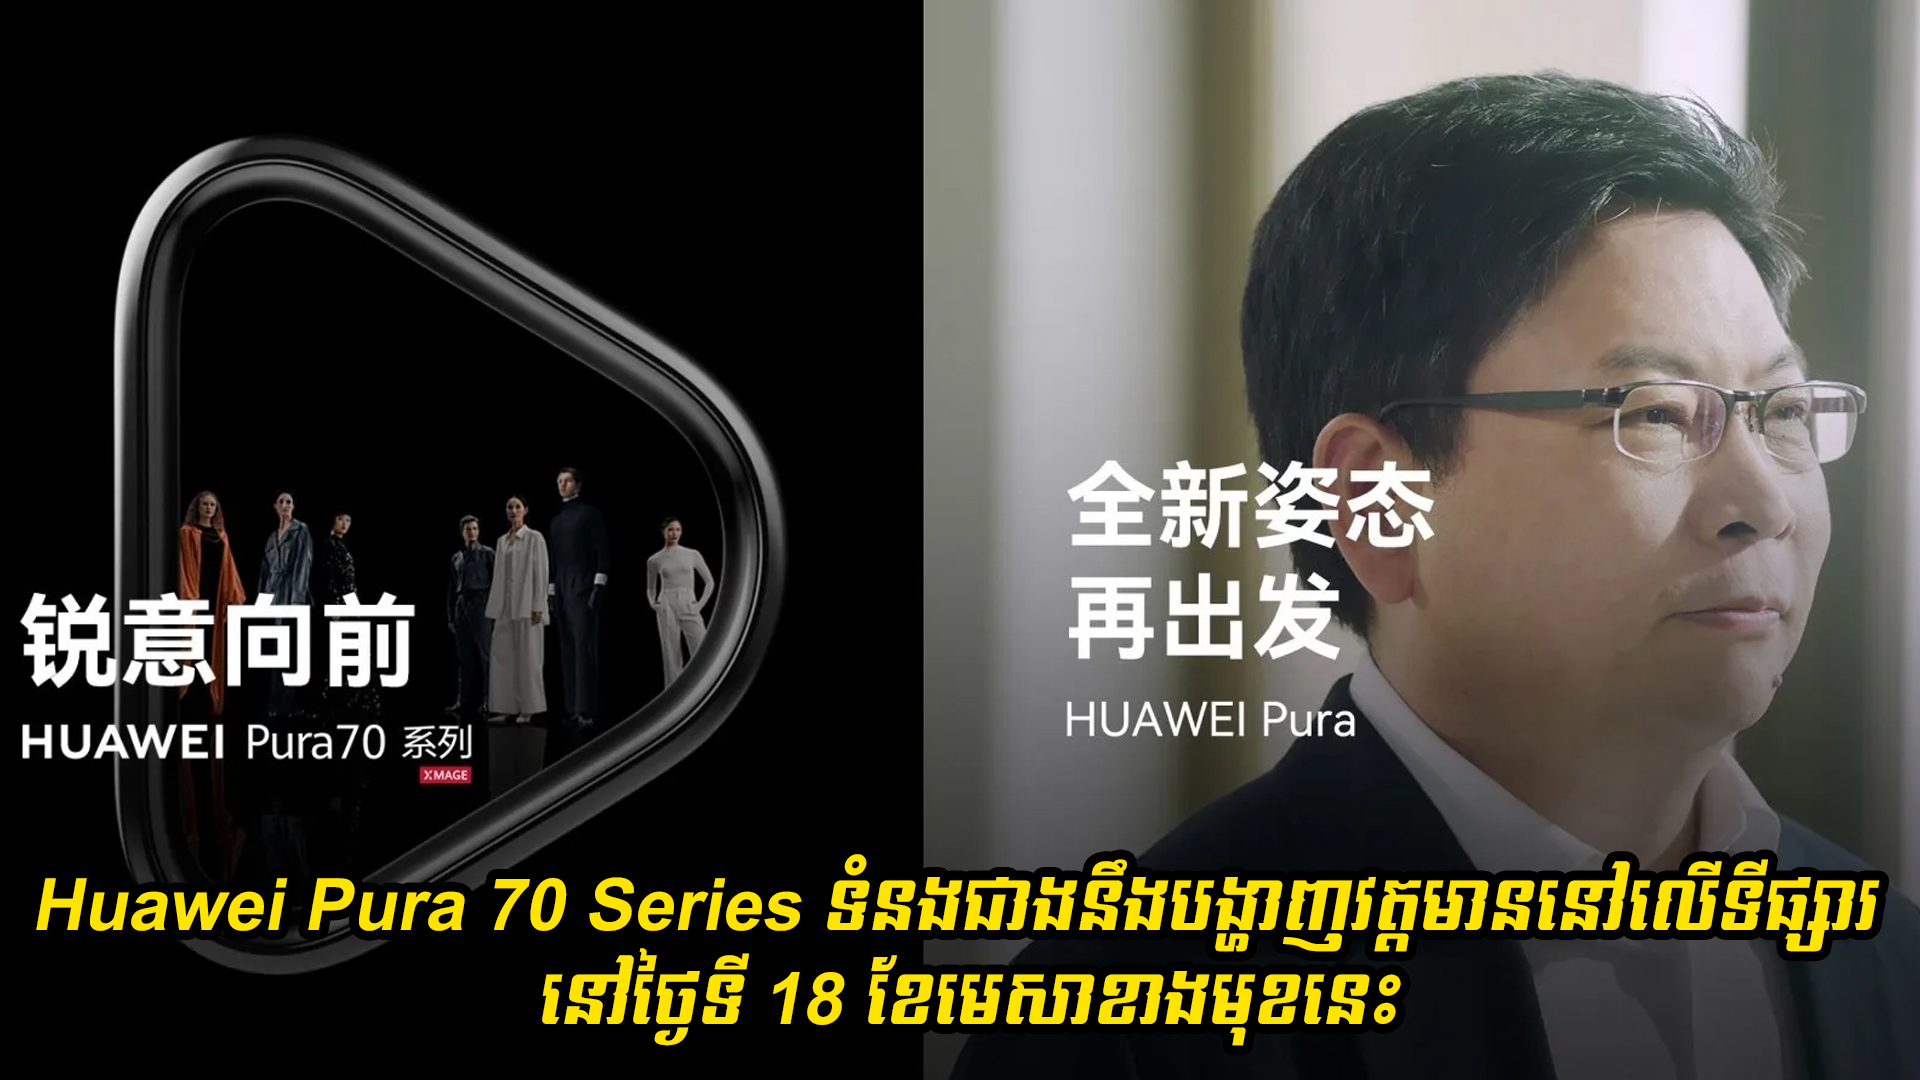 Huawei Pura 70 Series ទំនងជាងនឹងបង្ហាញវត្តមាននៅលើទីផ្សារនៅថ្ងៃទី 18 ខែមេសា